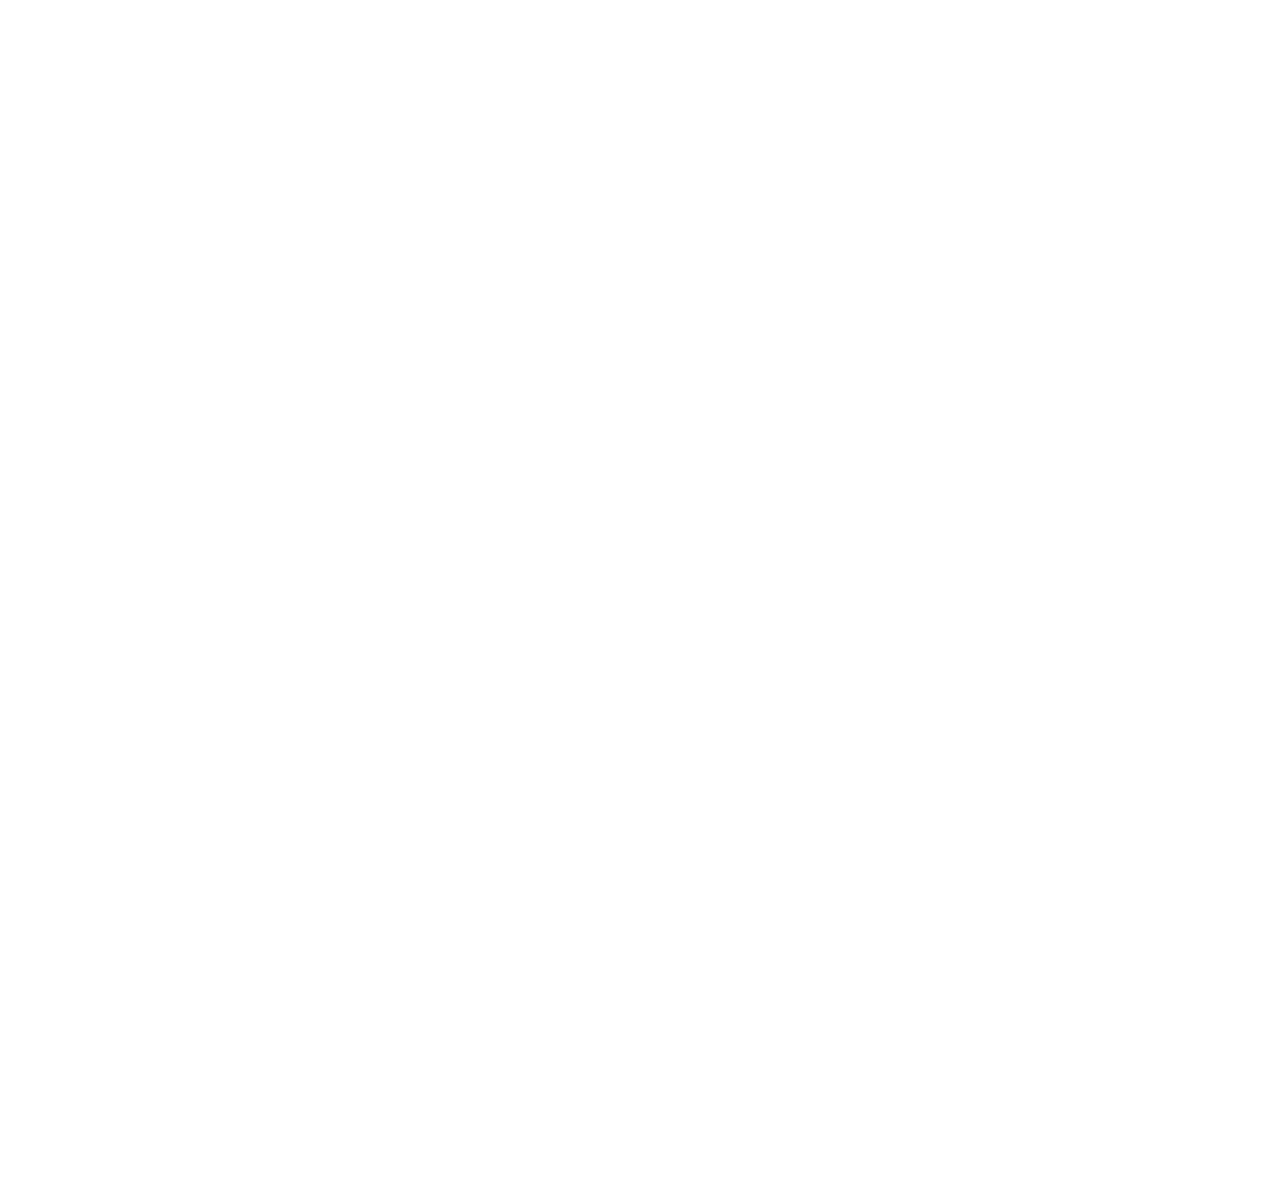 PAWIA's logo